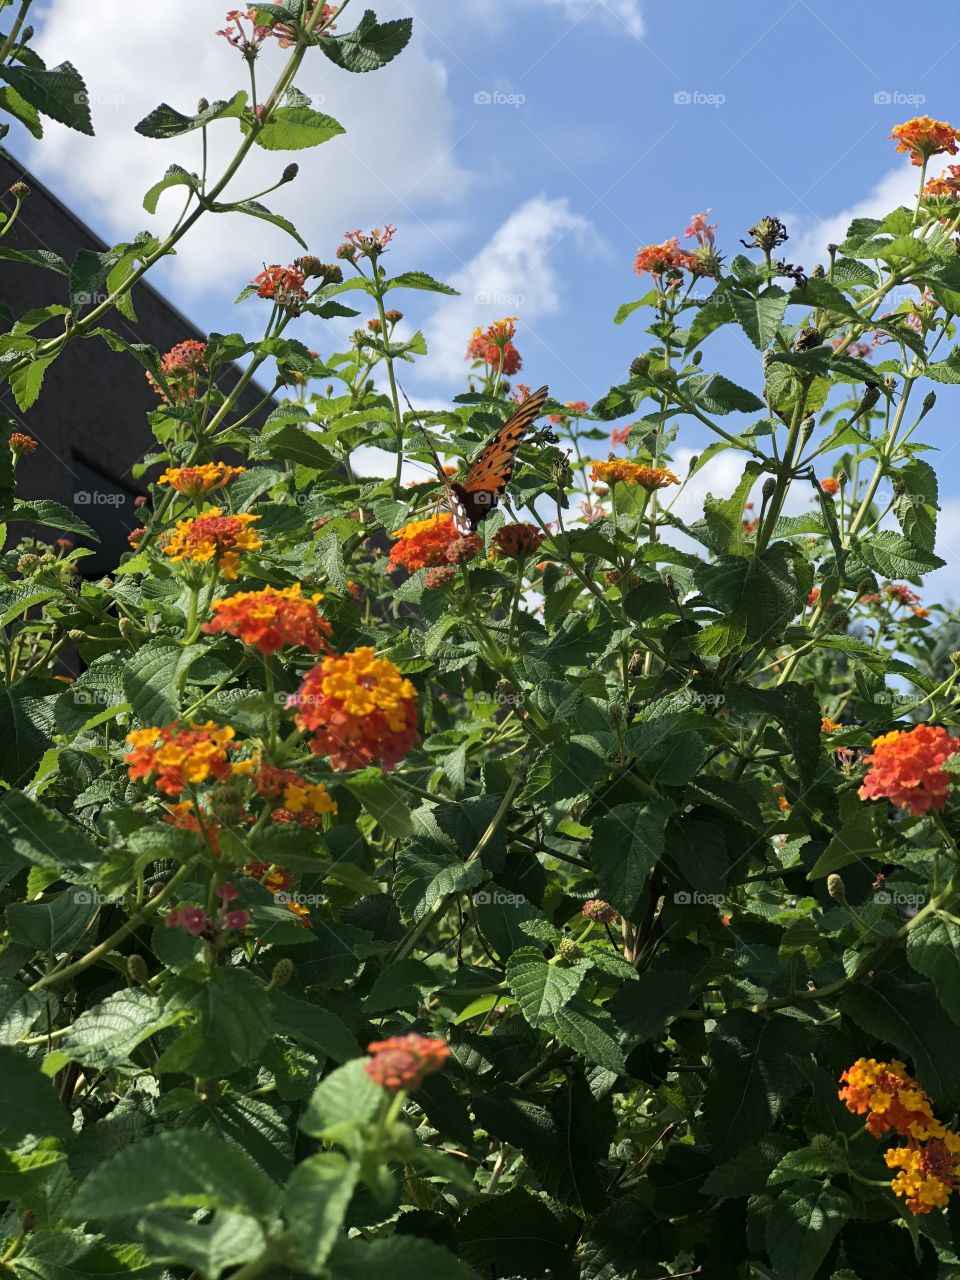 Butterfly in an orange flower bush 